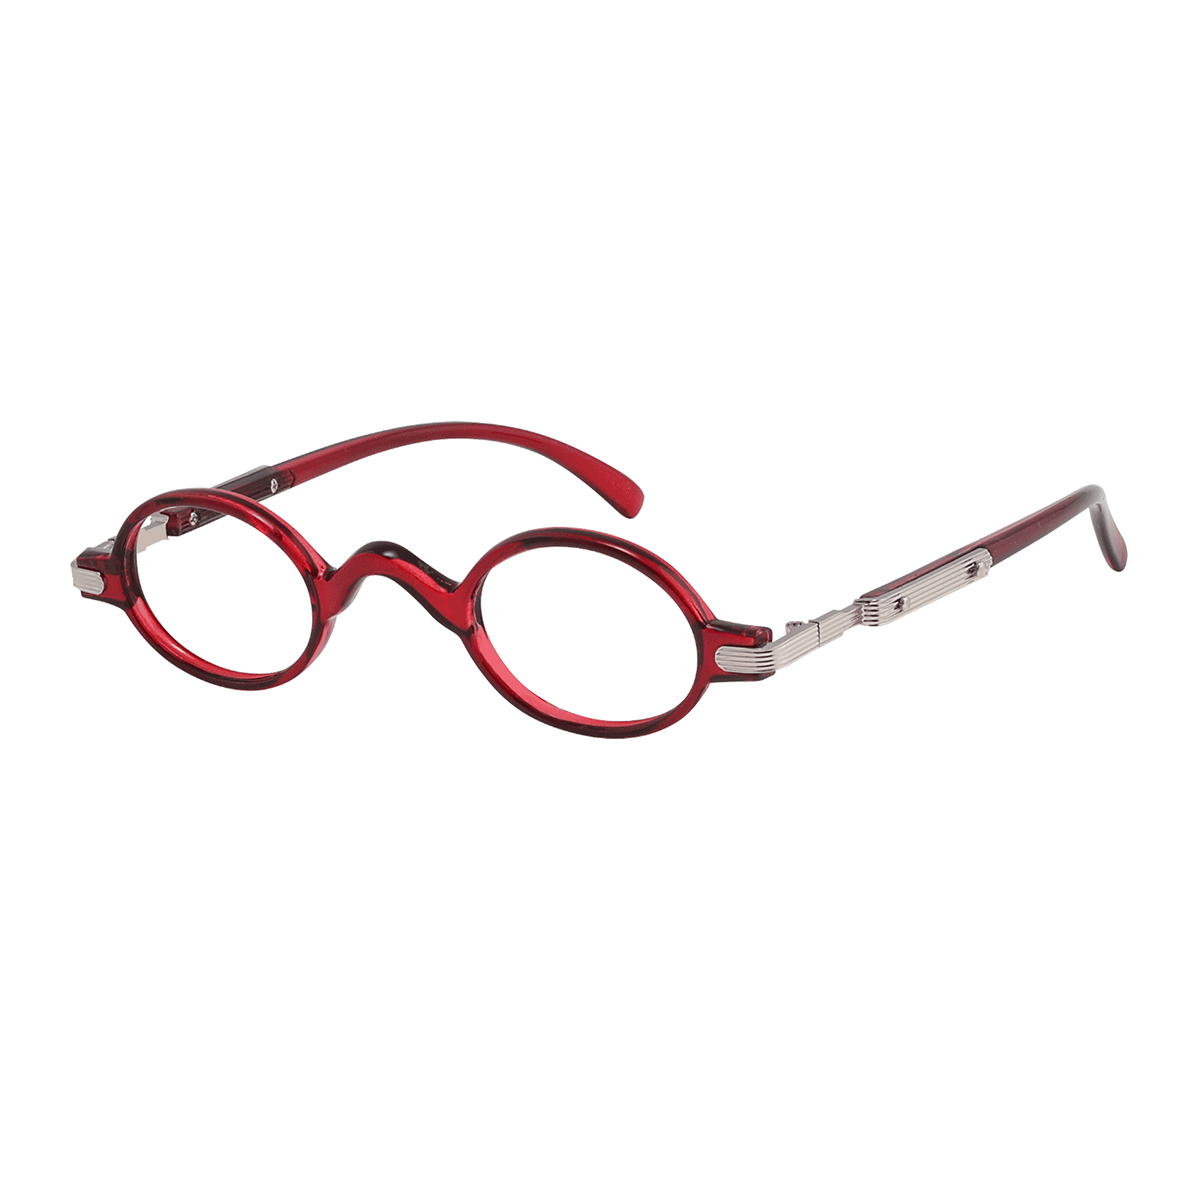 Dodona - Round Transparent-Red Reading Glasses for Men & Women